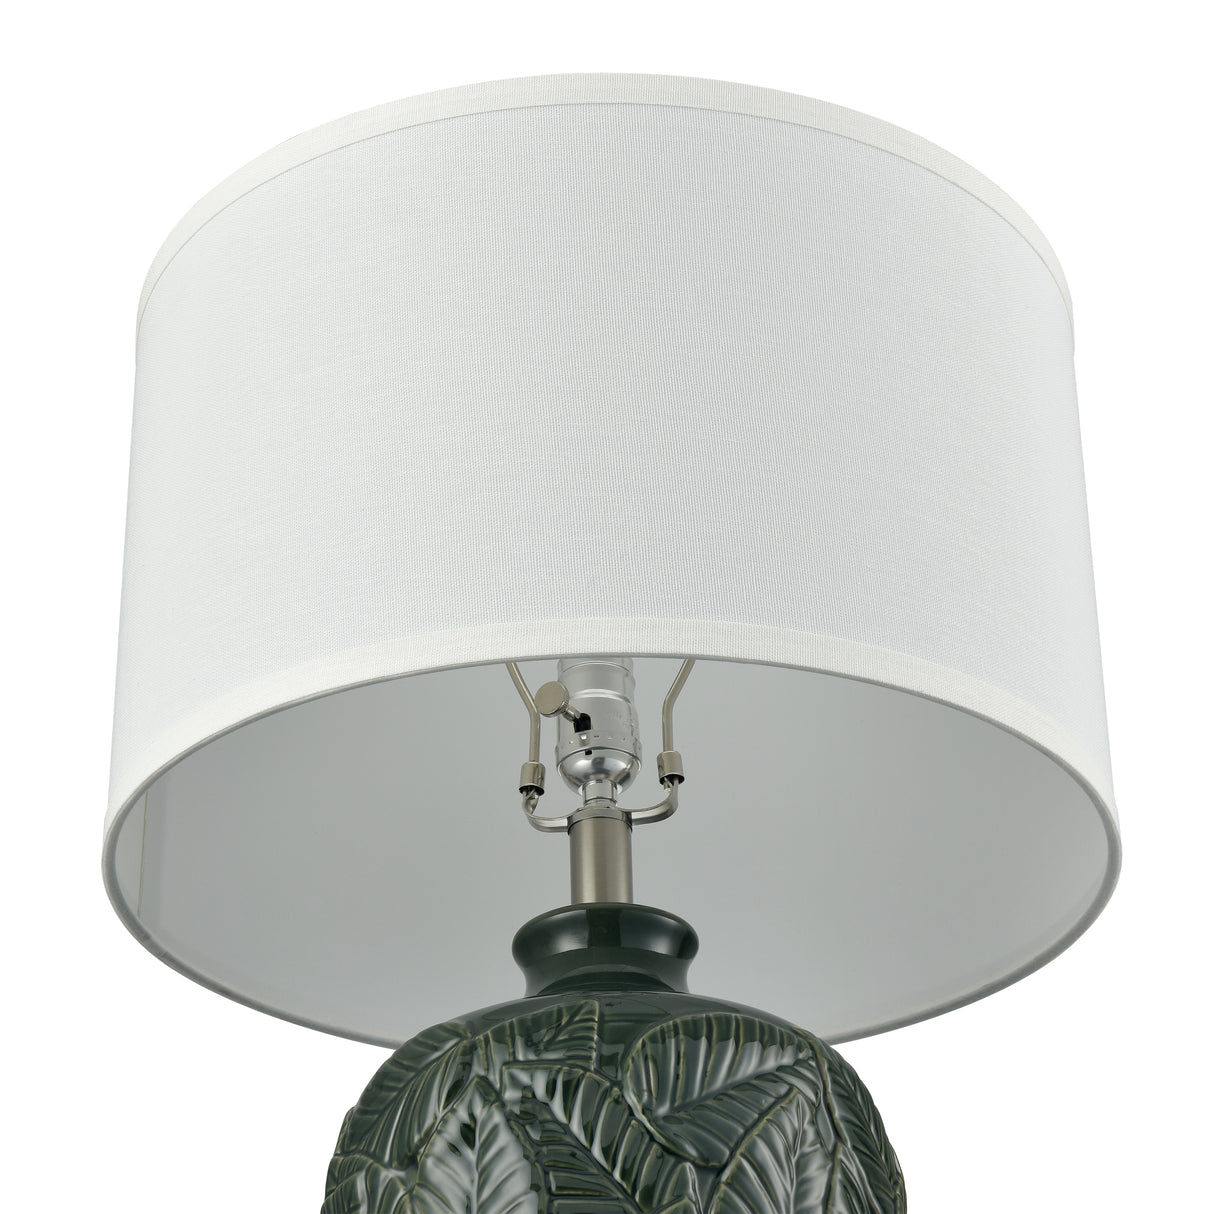 Elk S0019-11148-LED Goodell 27.5'' High 1-Light Table Lamp - Green Glaze - Includes LED Bulb